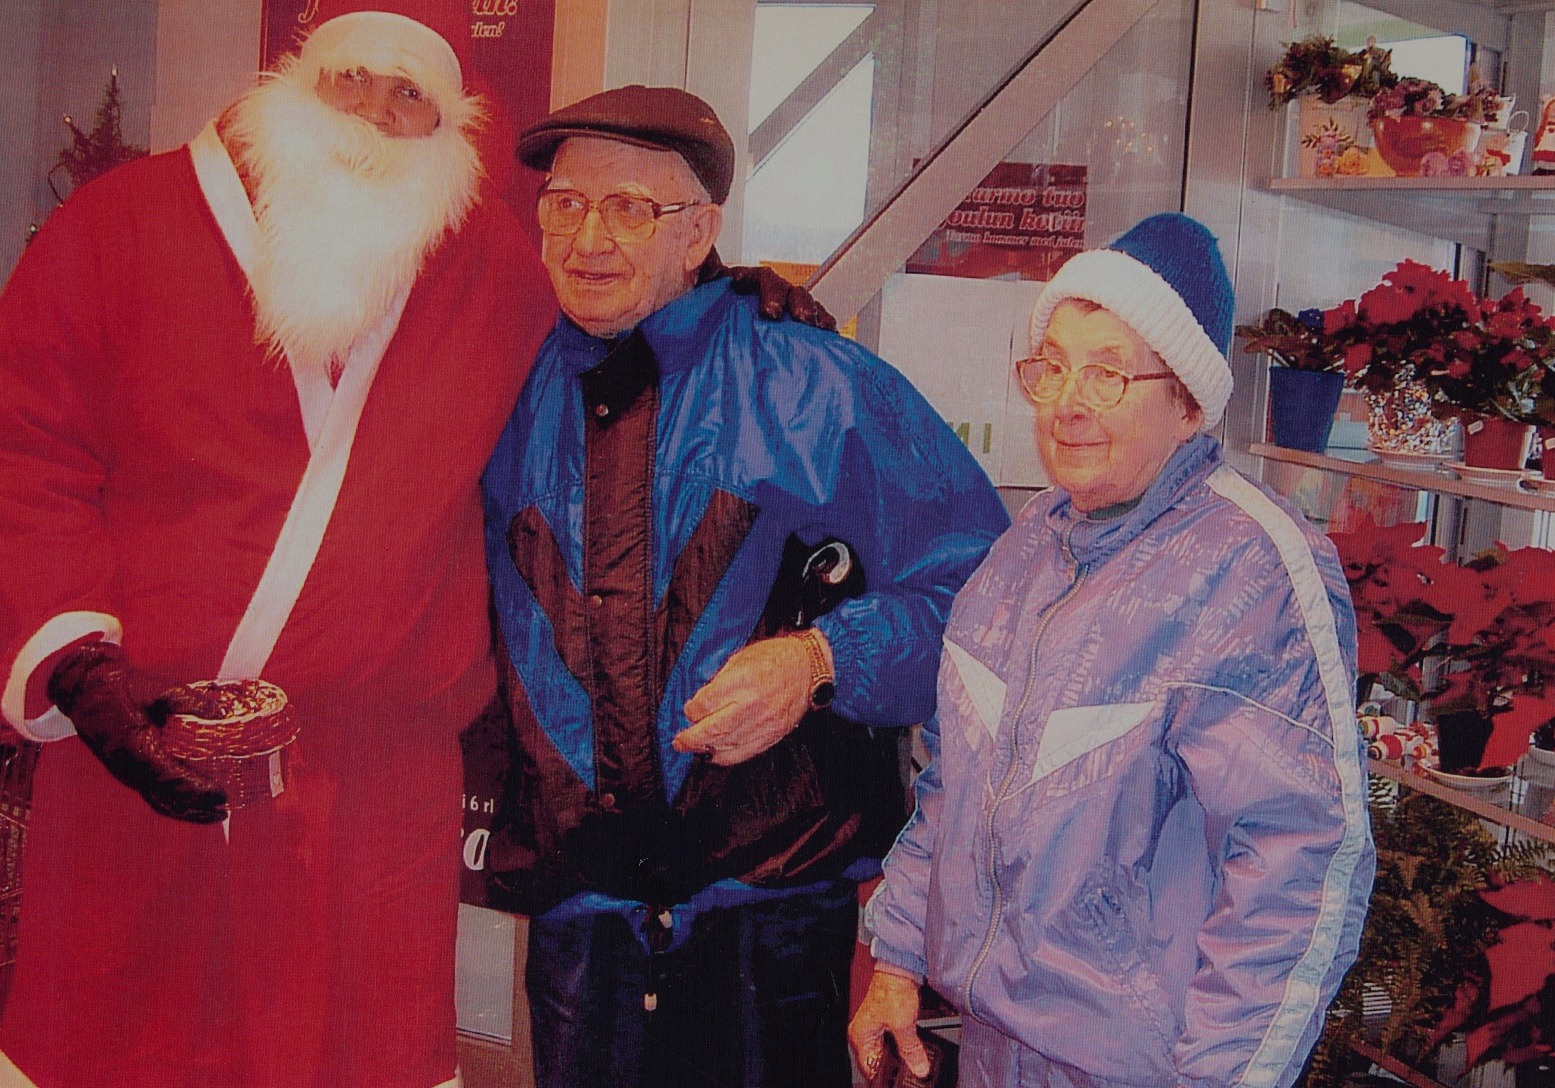 Jultomten hälsar på Ragnar och Jenny i Kerstins Dagsmark Närköp julen 2004.